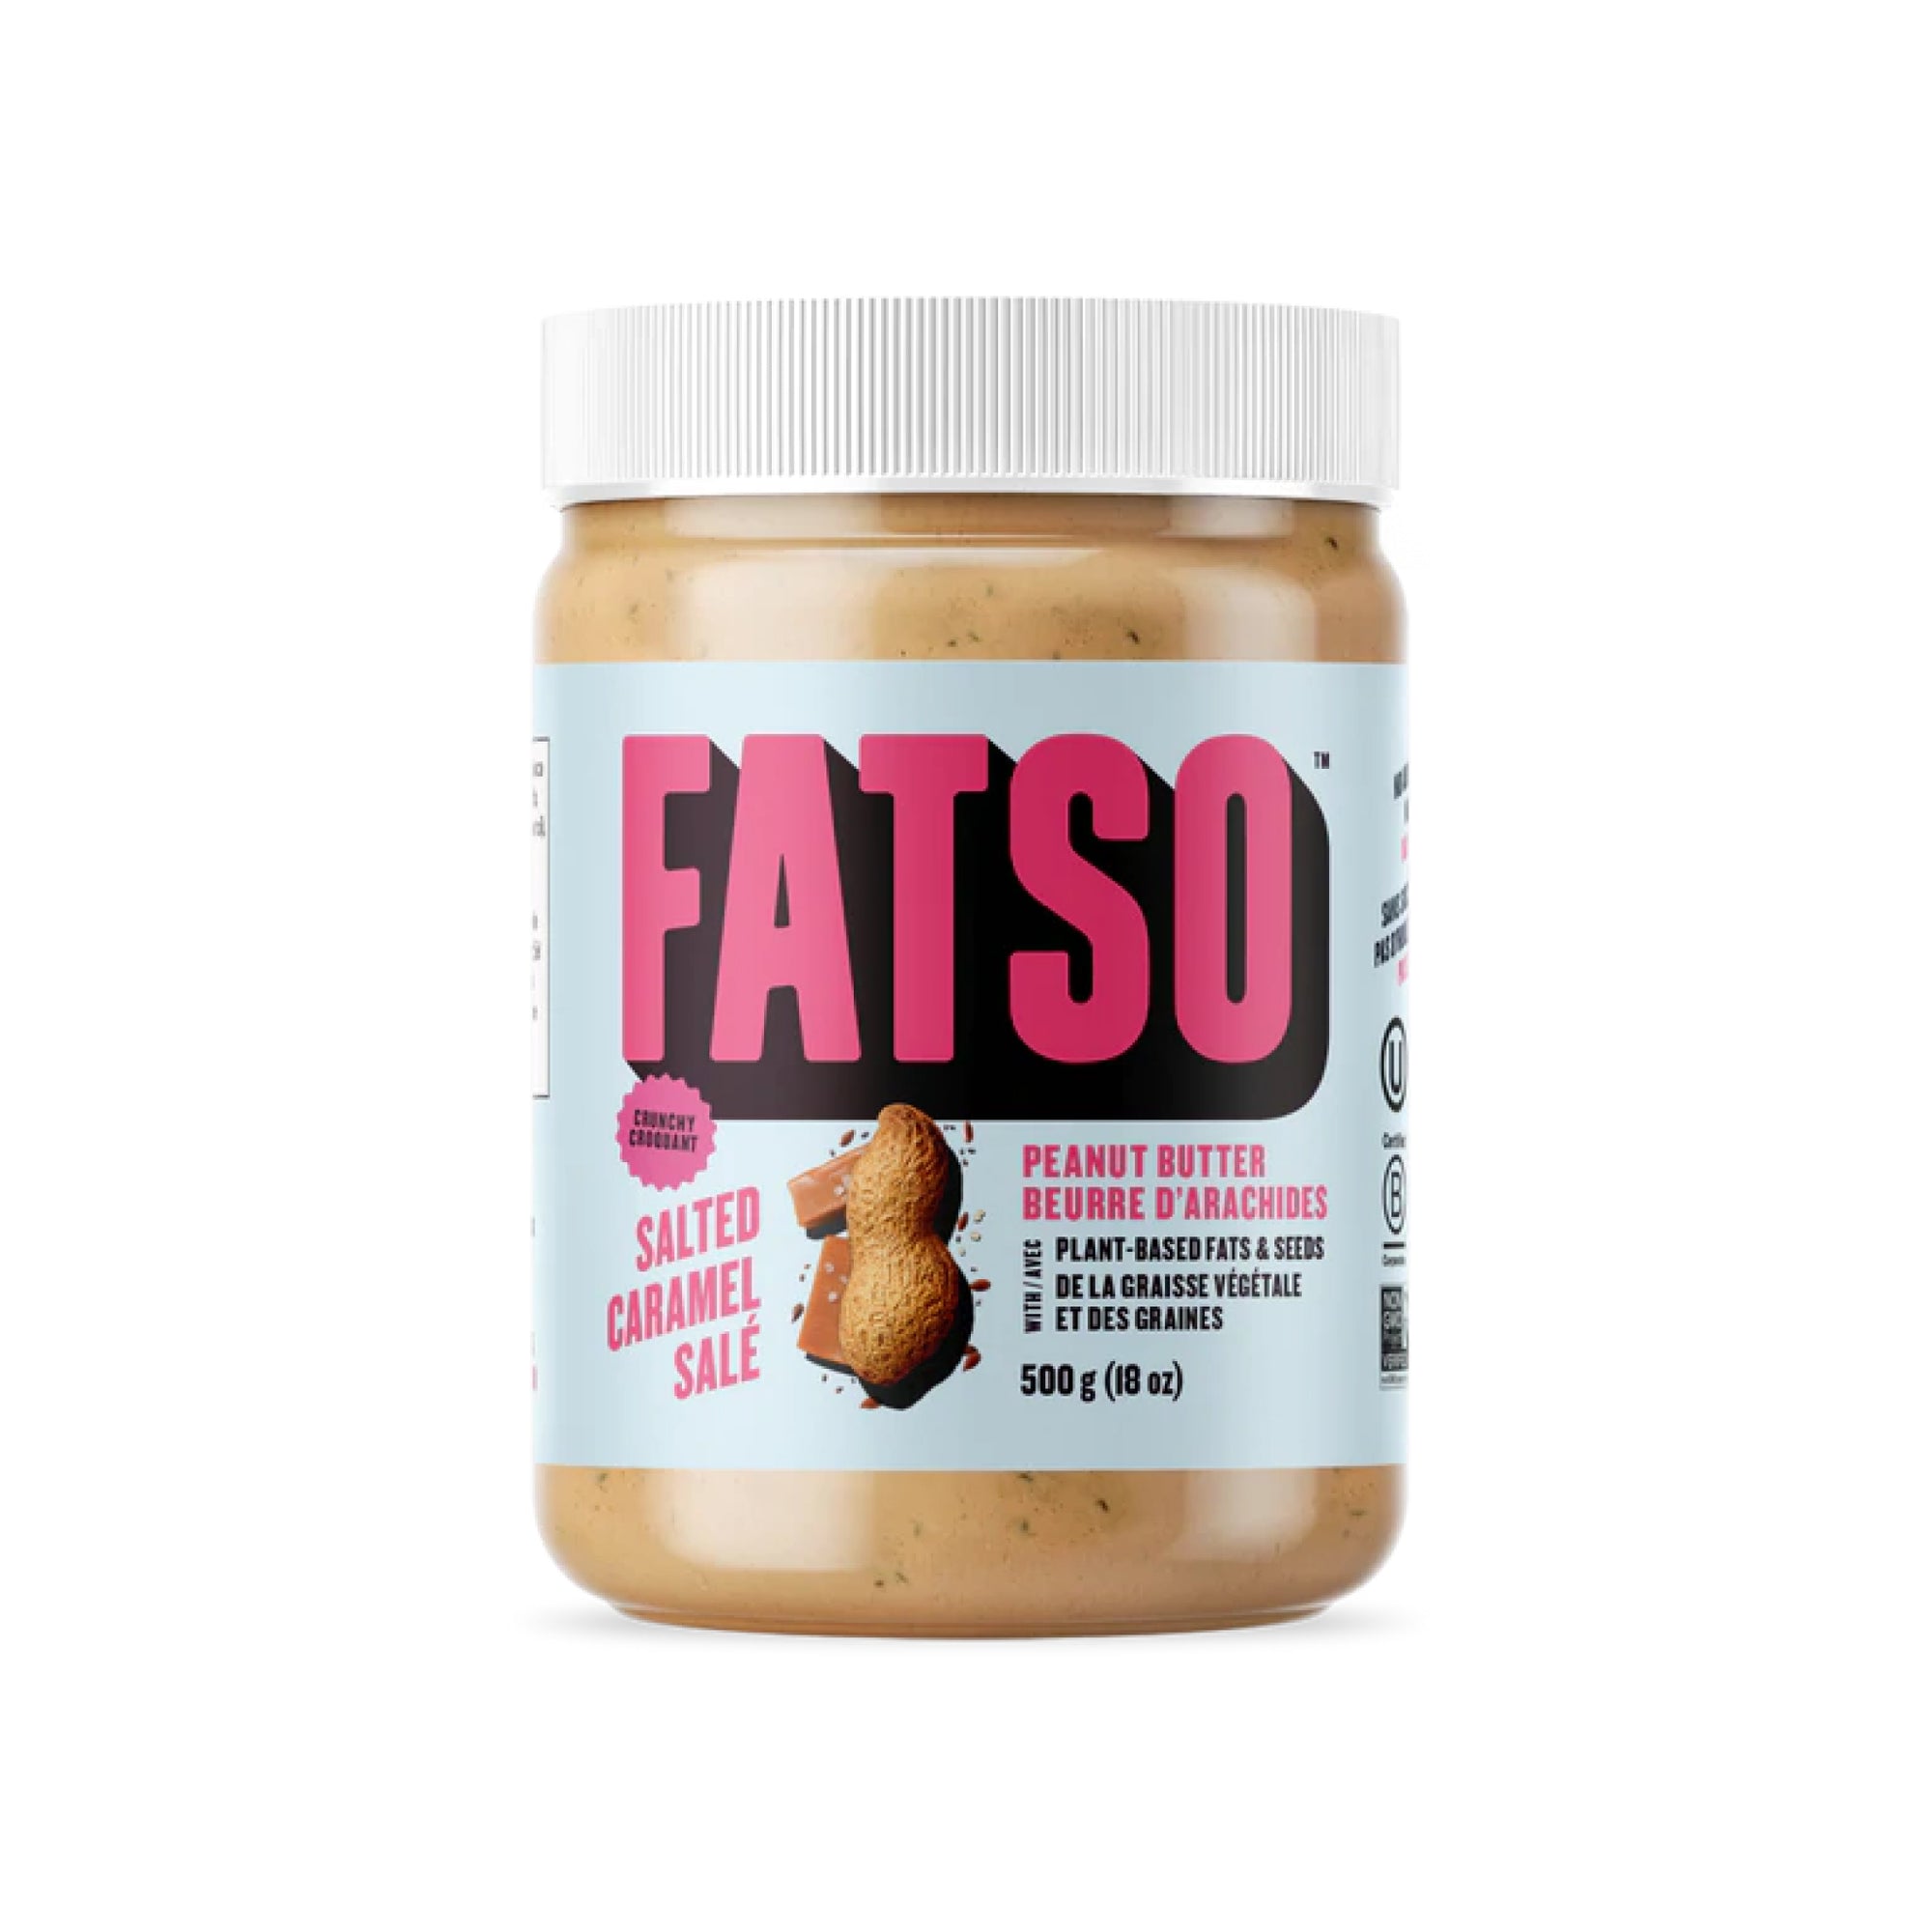 Fatso Crunchy Salted Caramel Peanut Butter 500g